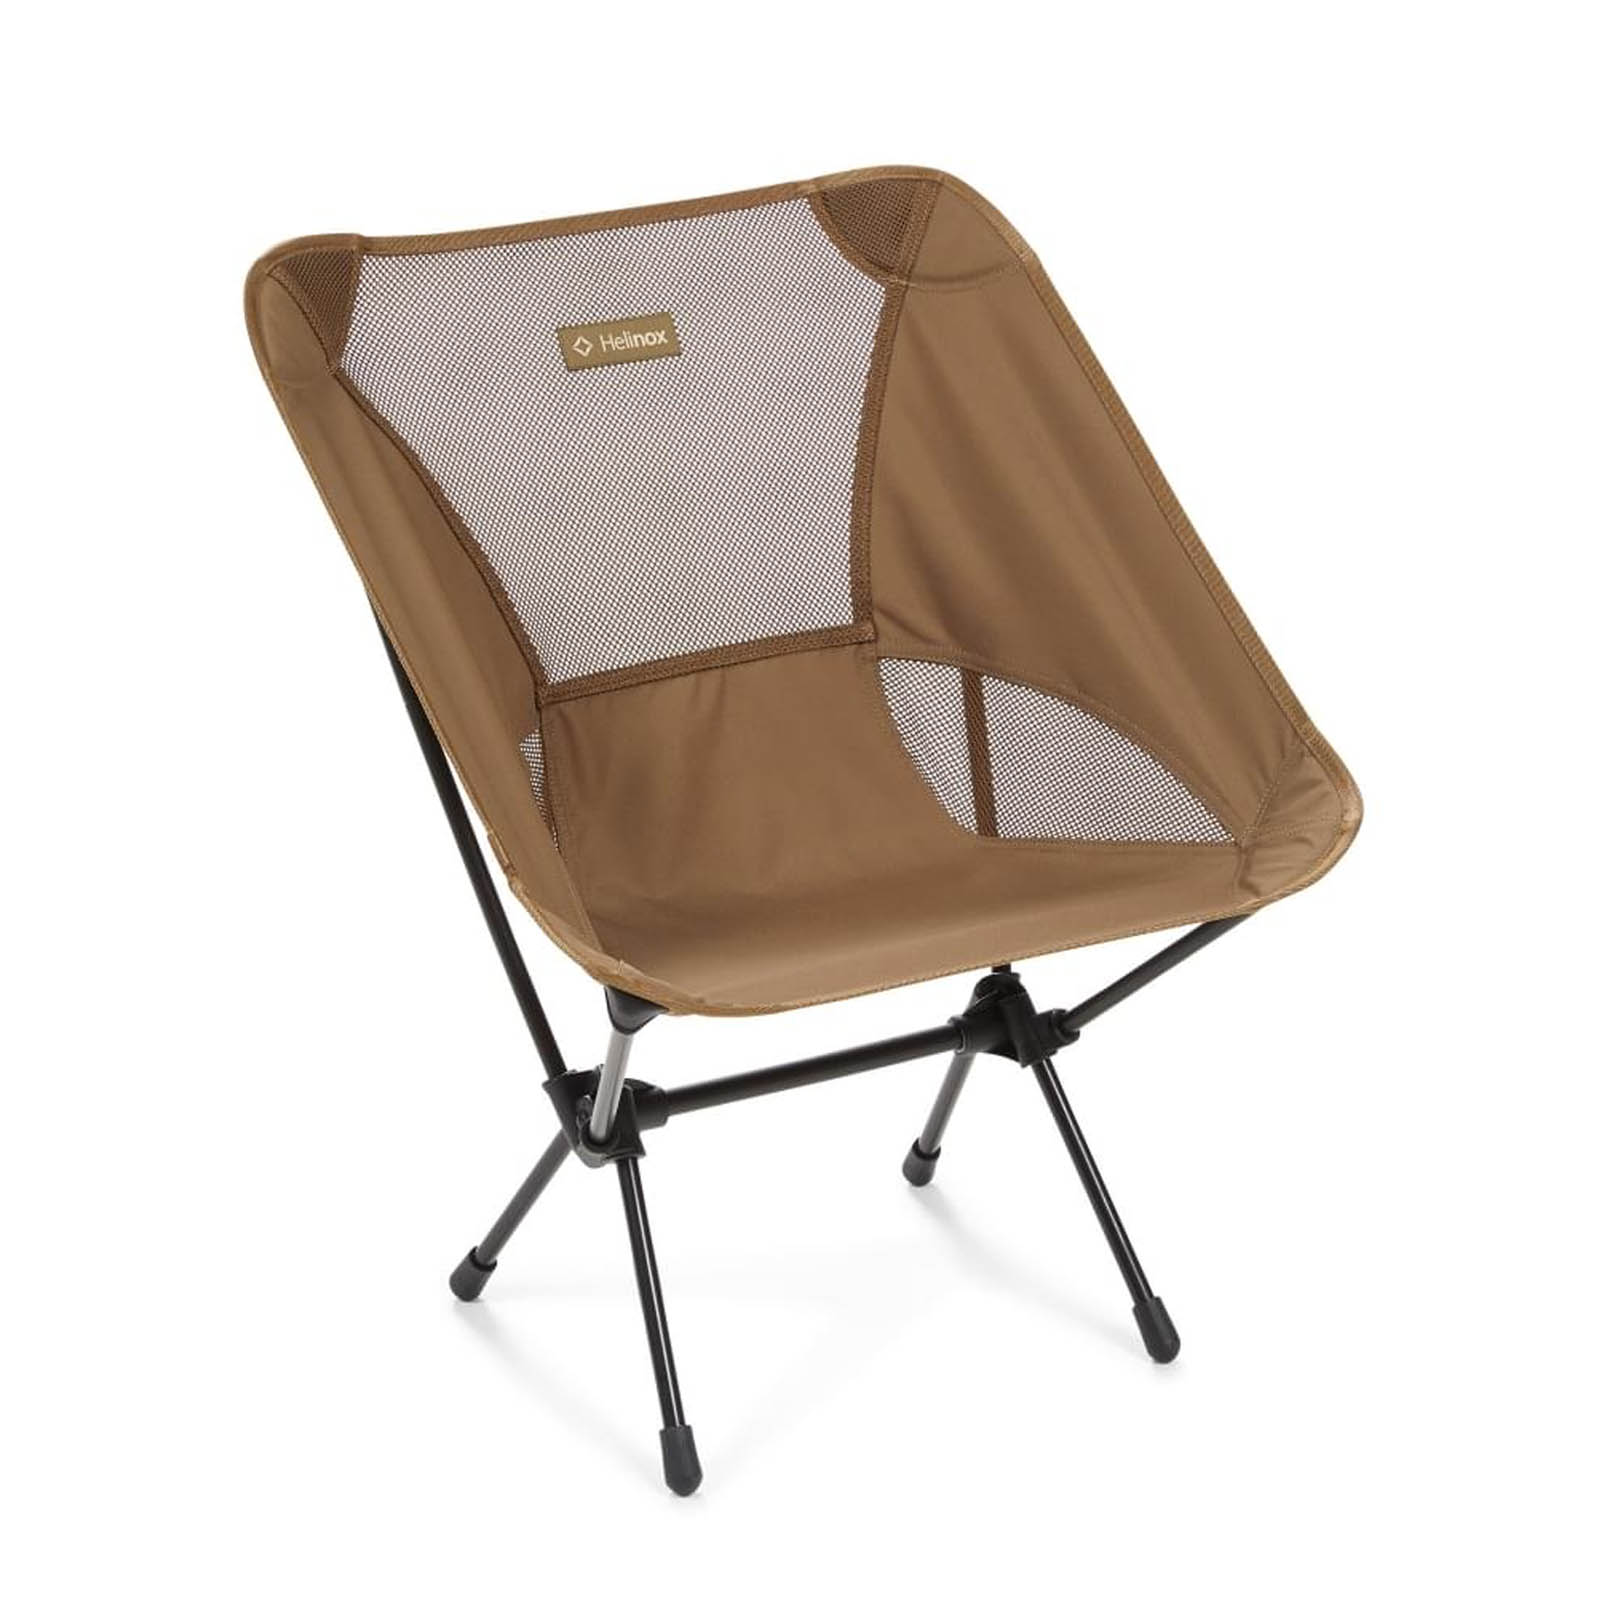 Mam tornado account HELINOX Chair One campingstoel - Saint Christopher vakantiefietswinkel